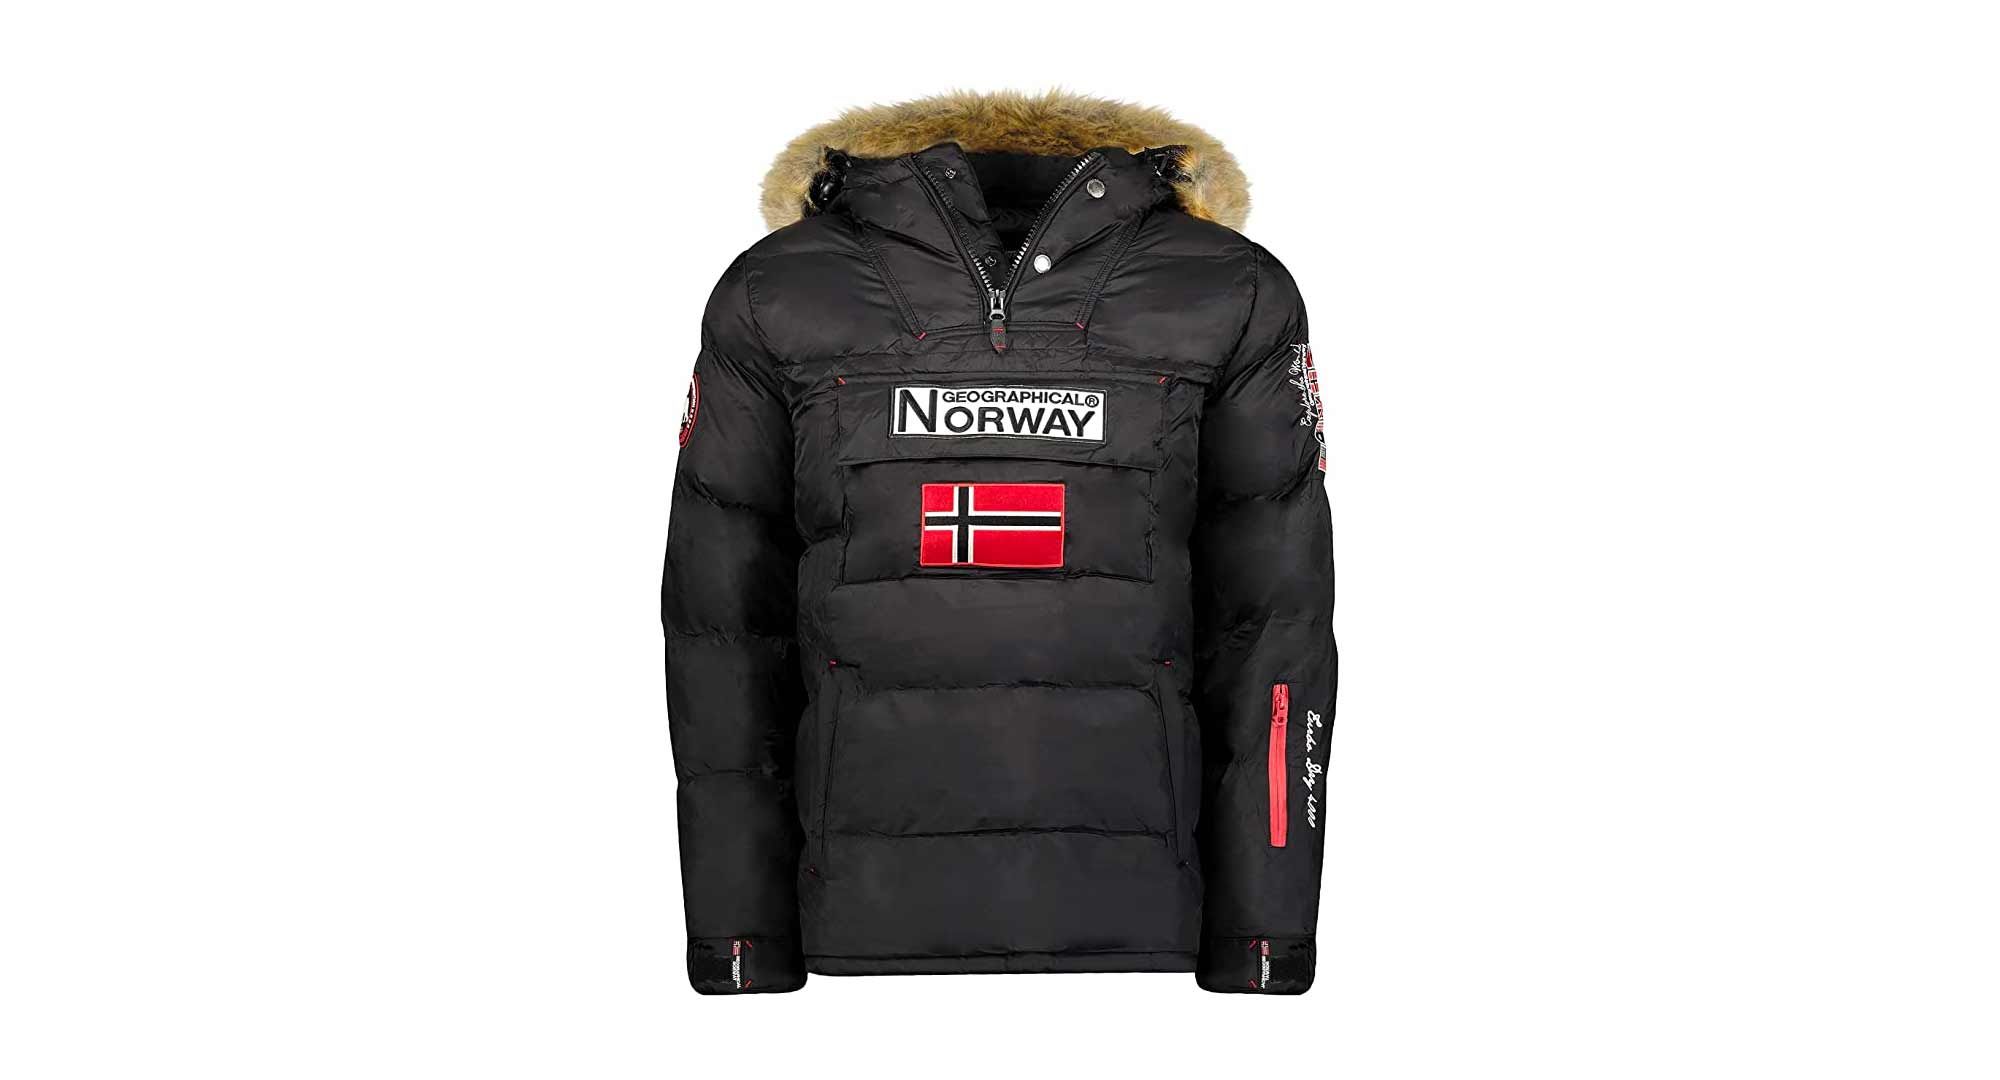 La chaqueta Geographical Norway de